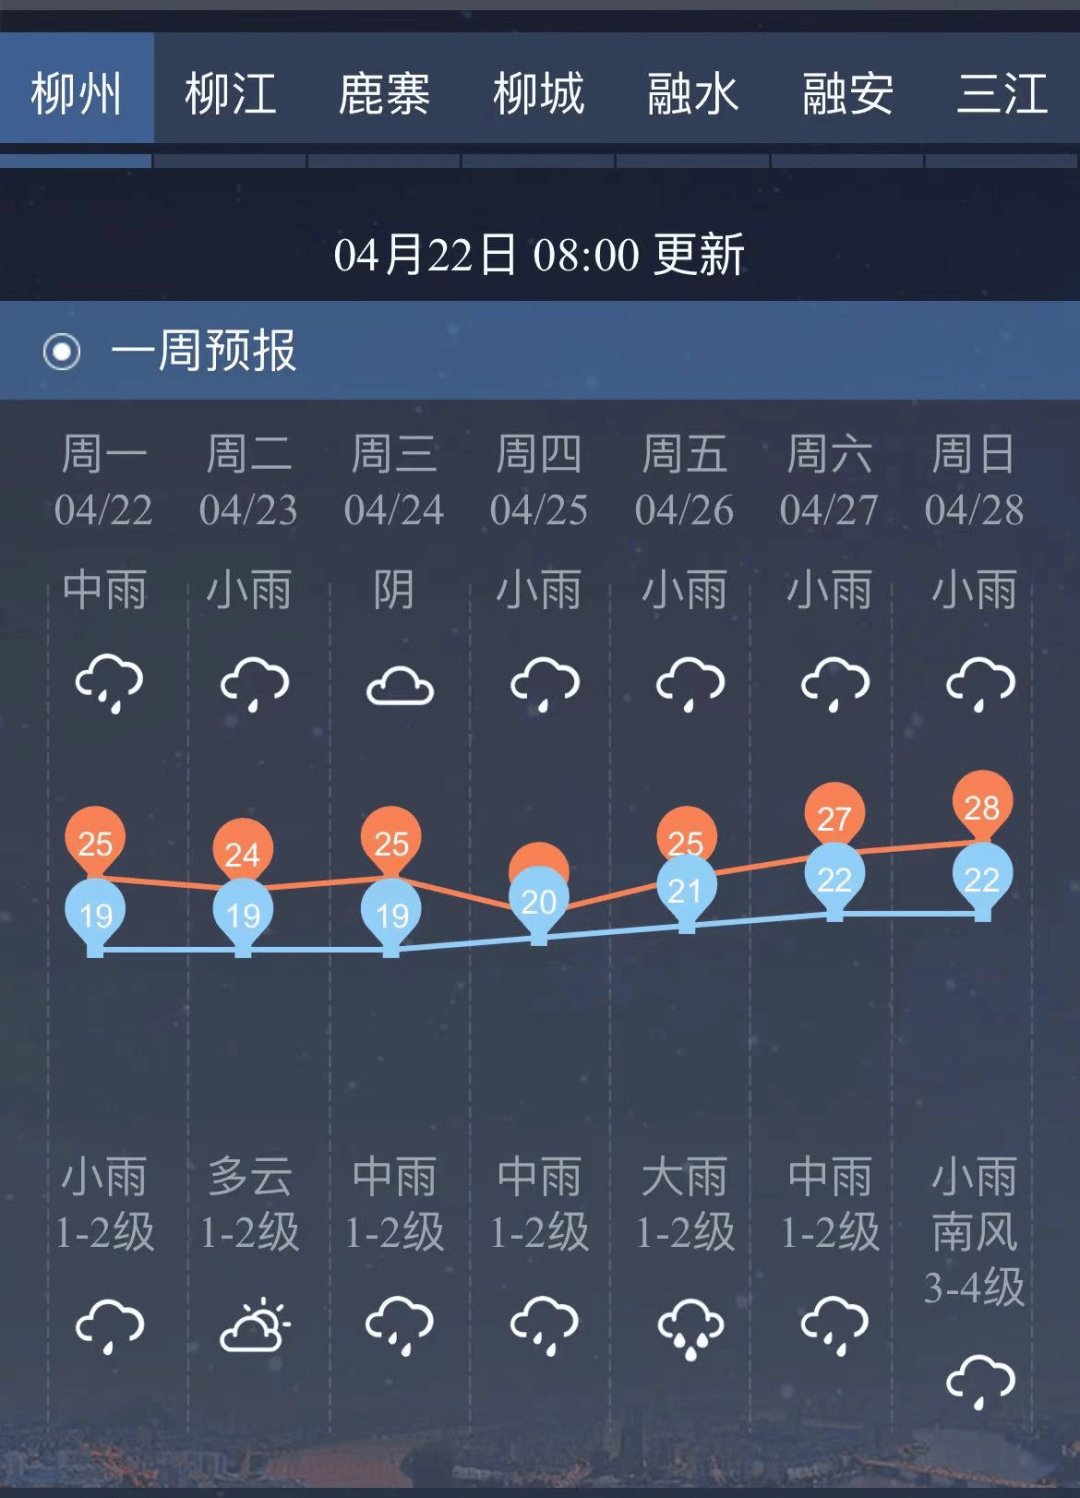 本月底广西或将有两次降雨过程!@柳州人,未来一周天气出炉